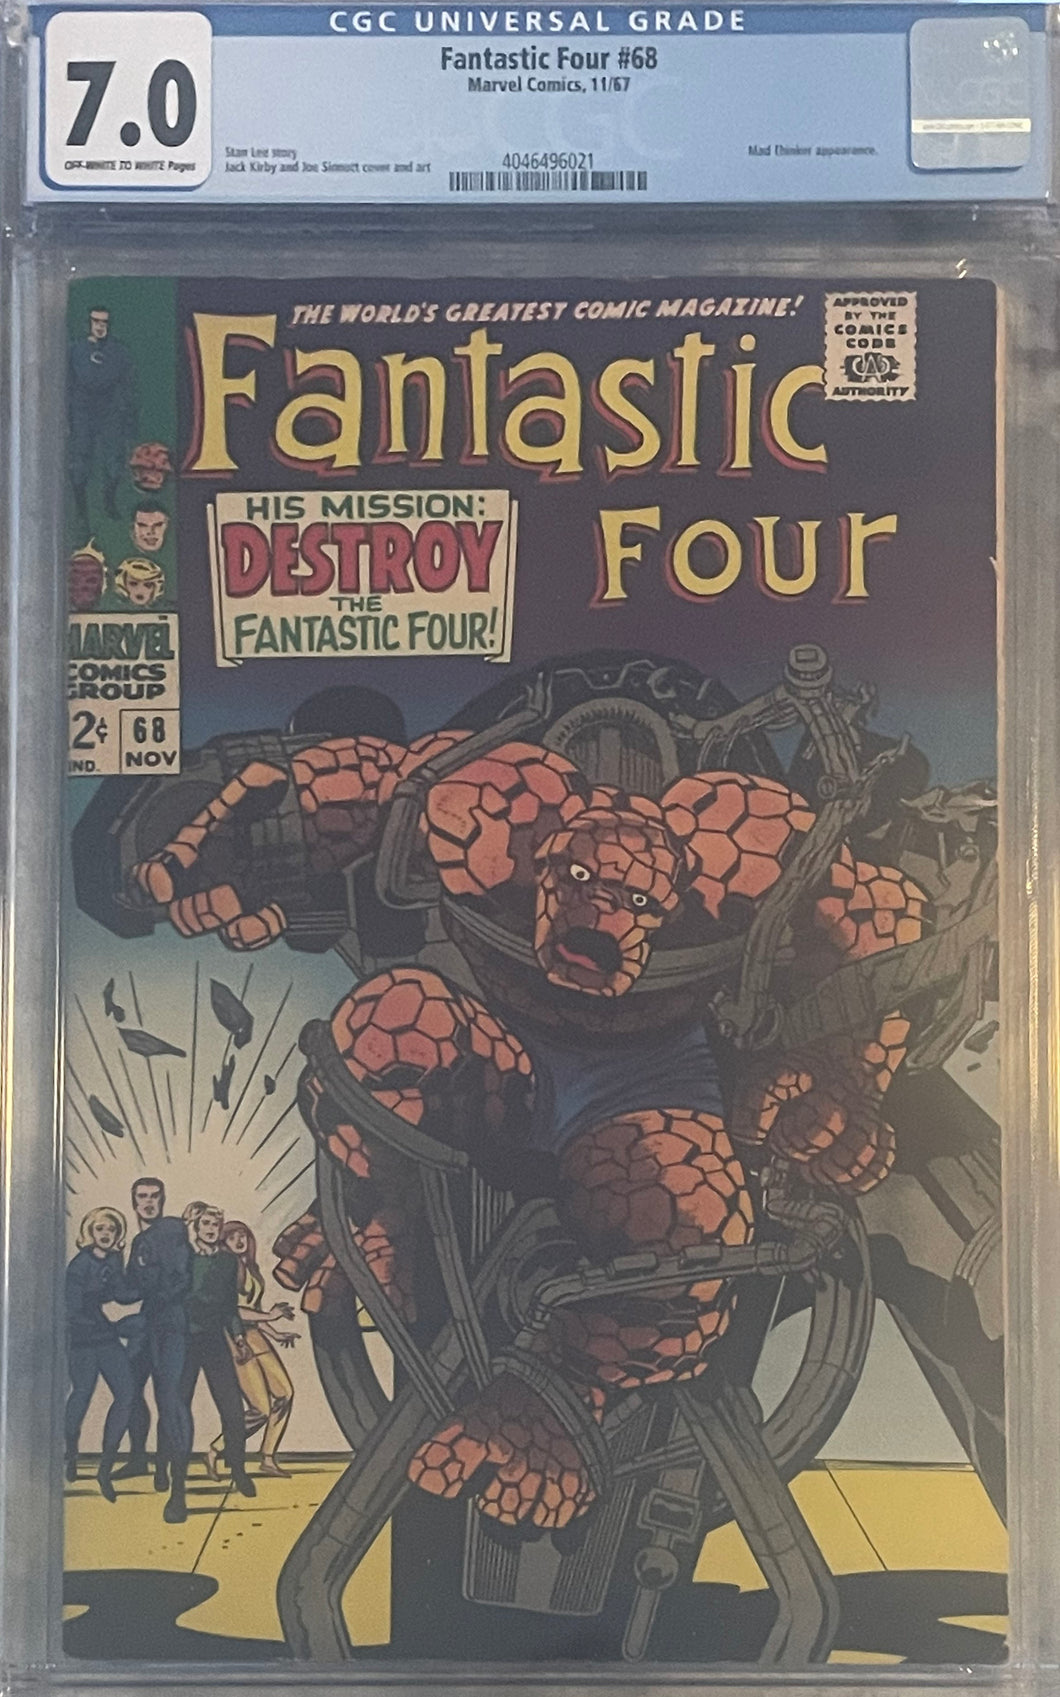 Fantastic Four #68 7.0 CGC